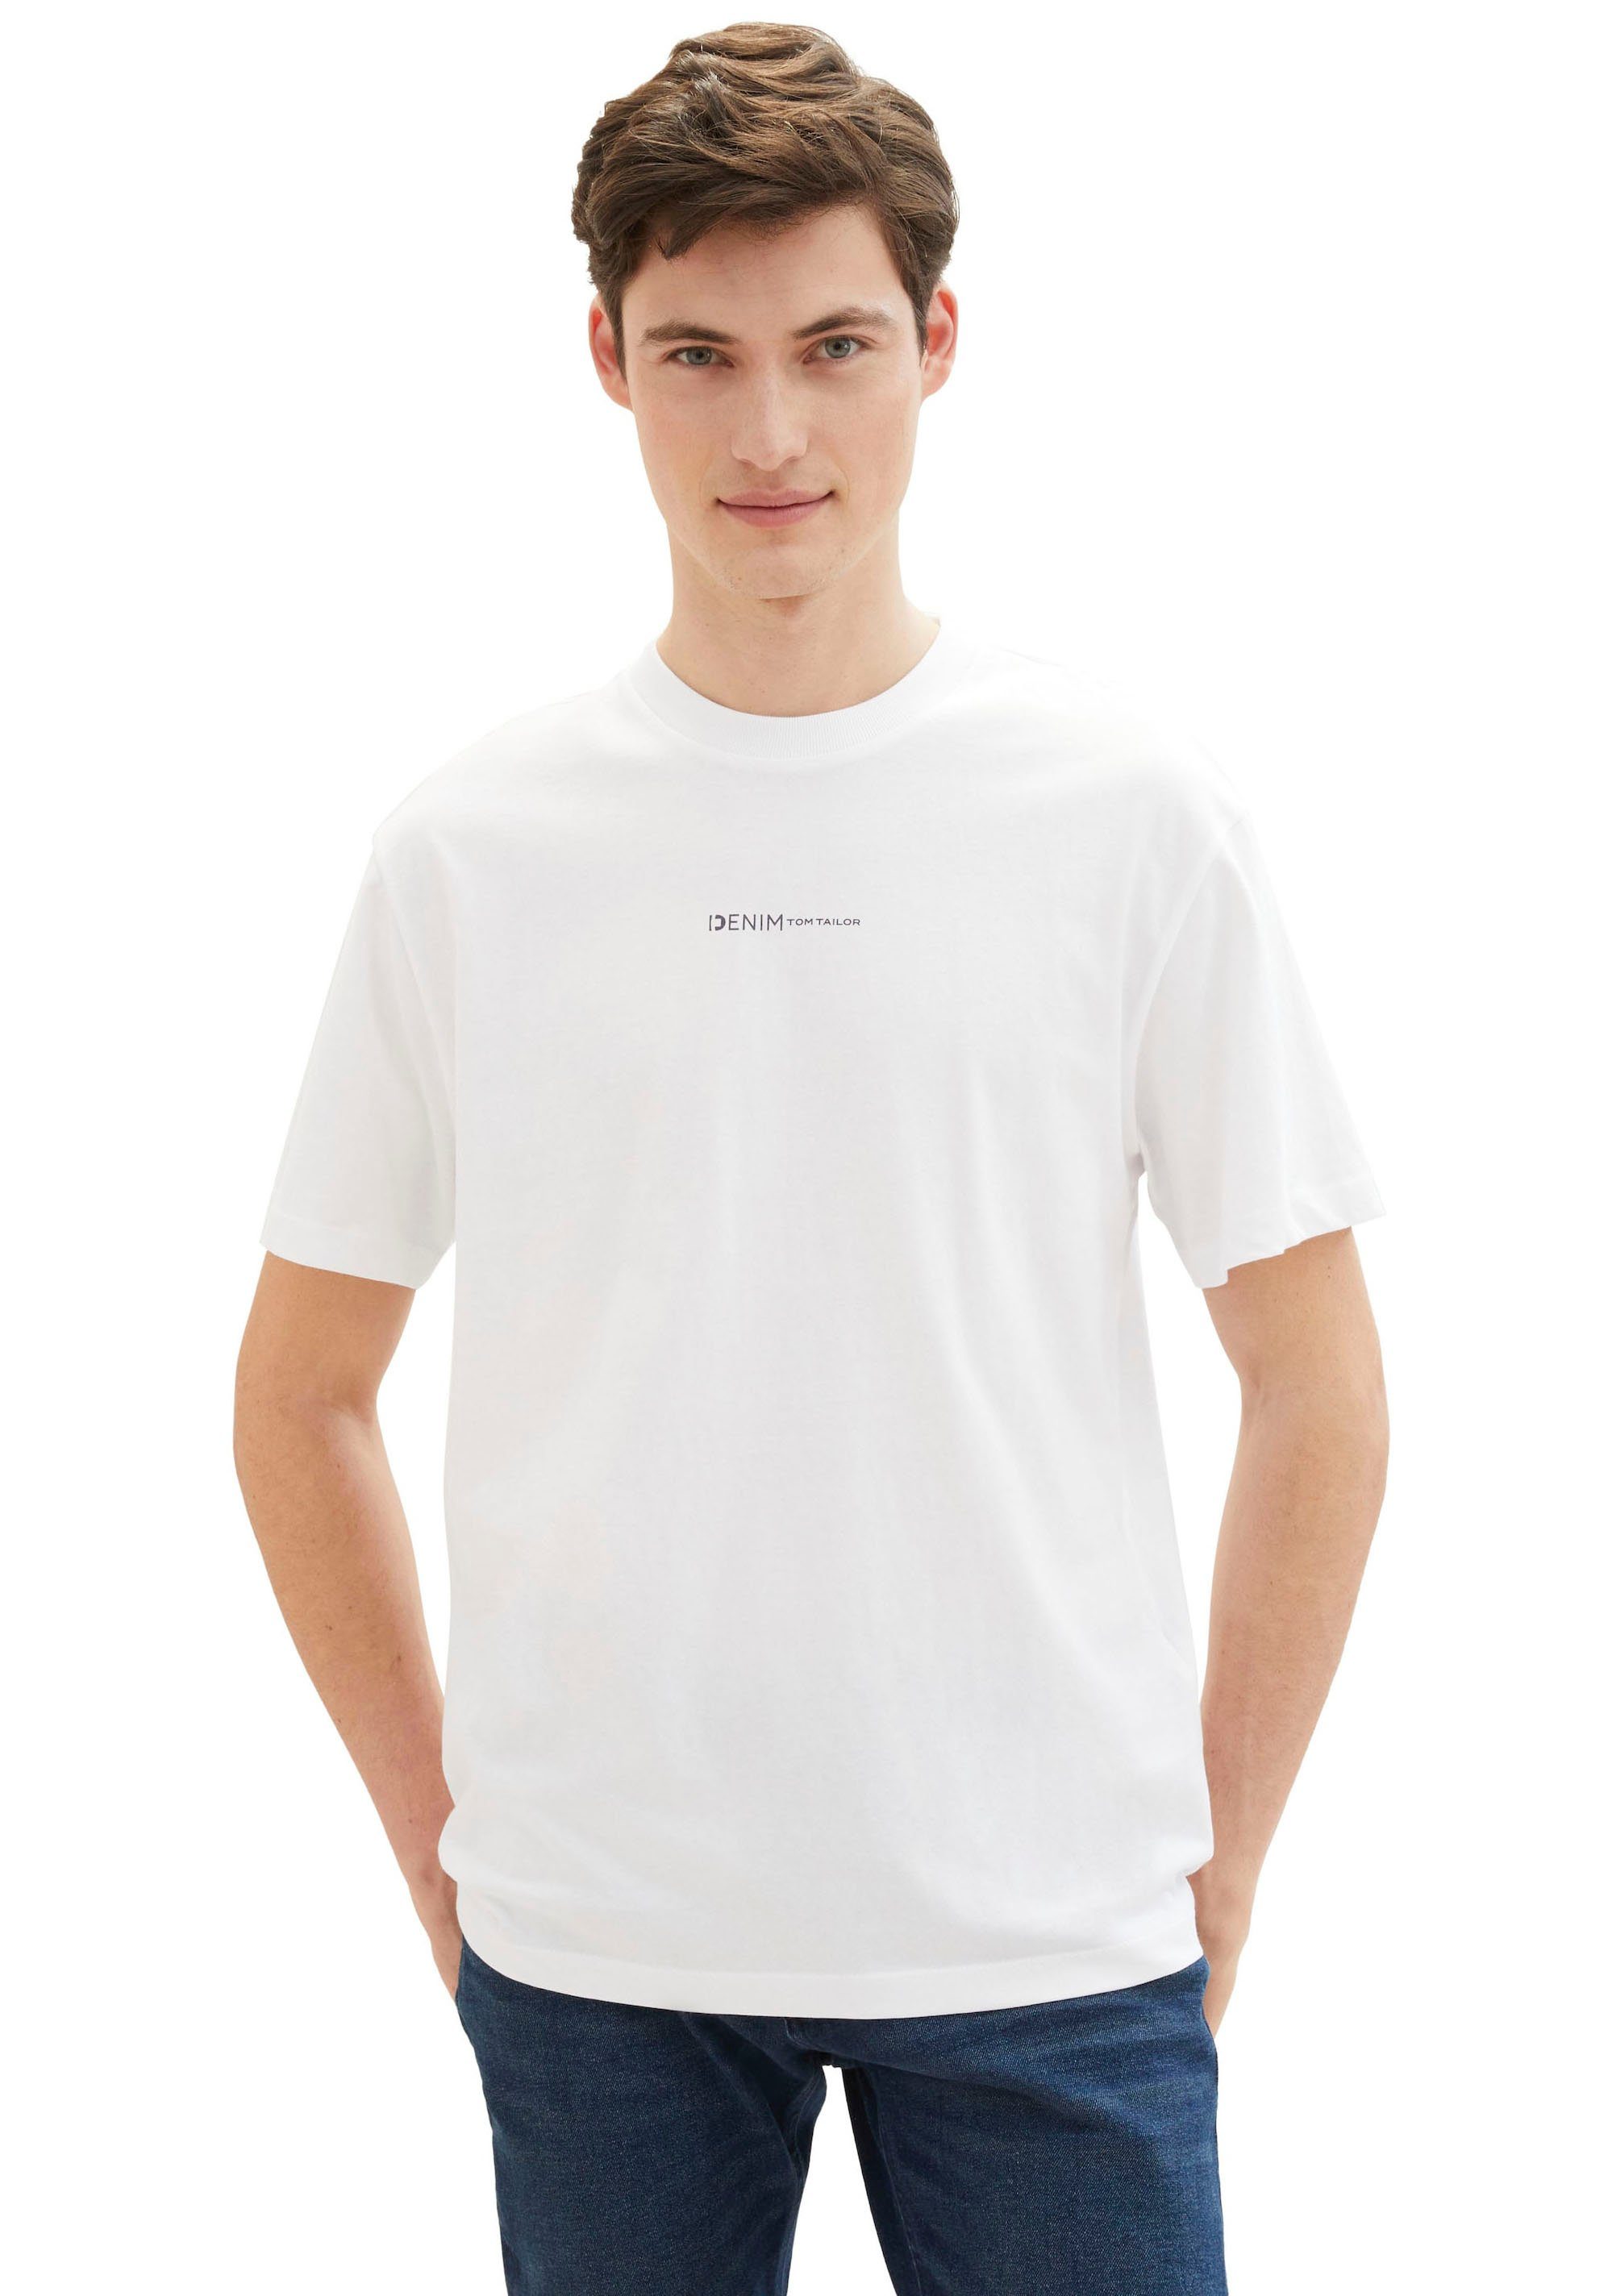 TOM TAILOR Denim Rundhalsshirt mit Logo-Print und aus reiner Baumwolle